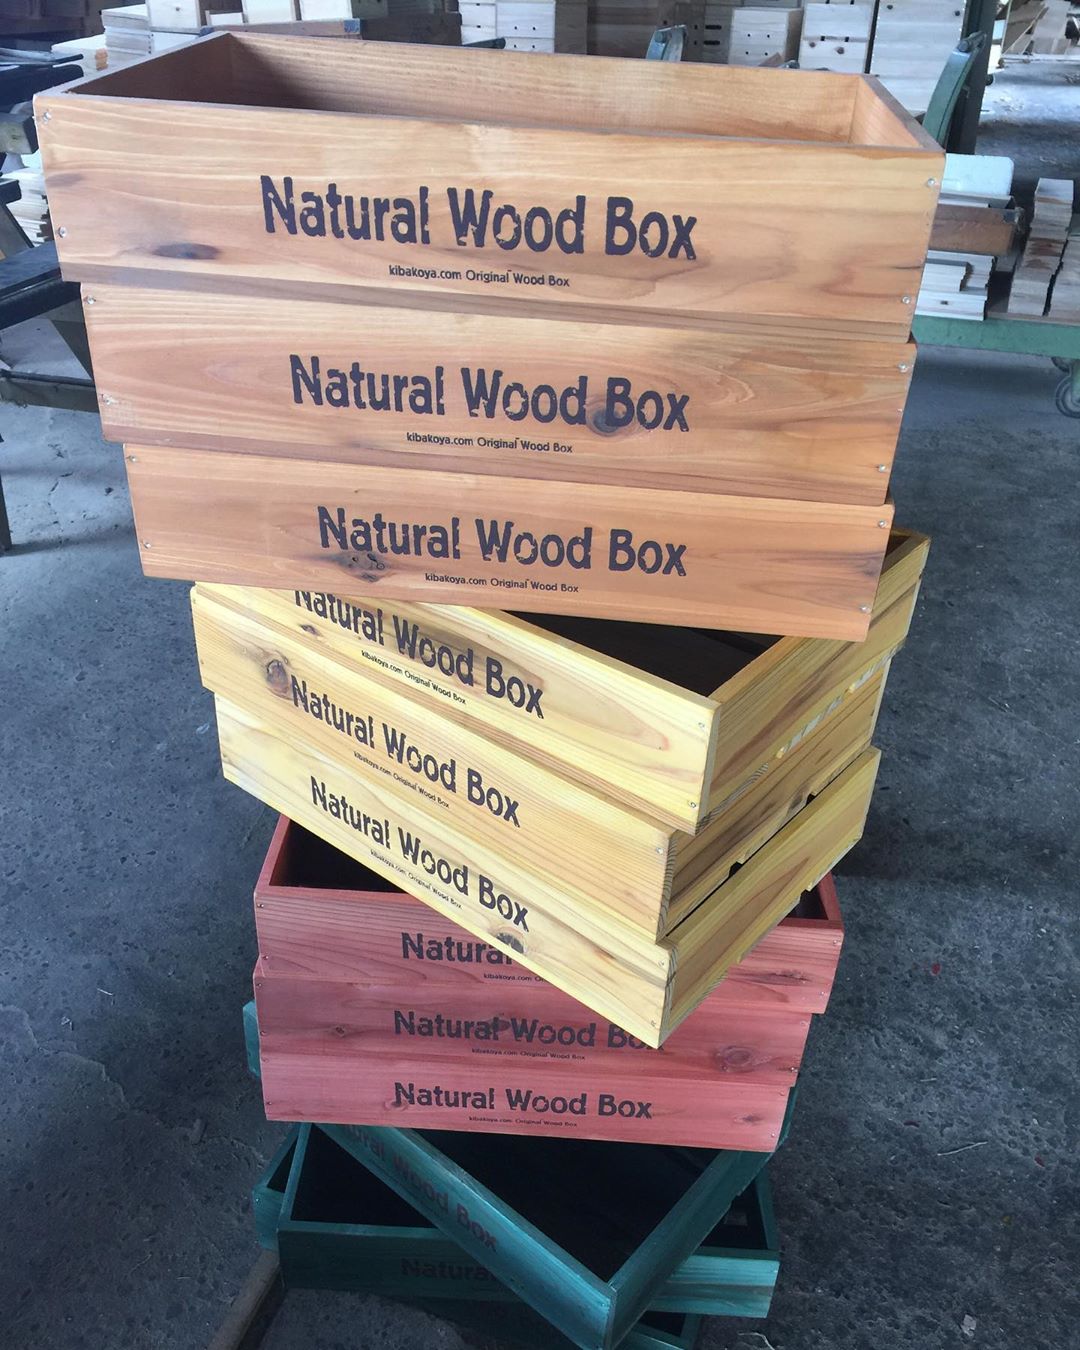 ・
・
カラフルなマルシェボックス?
・
浅型マルシェボックスを色々な色でご注文頂きました。
こちらは本日発送致しました。
・
・
当店では、店舗用のマルシェボックスを販売しておりますが、
オリジナルロゴを印刷してオーダーメイドの木箱も承っております。
・
・——————————–・
オーダーメイドで世界に一つだけの木箱をおつくりします！
自然塗料Vatonで塗装していますのでお子様でも安心です♪
杉材、桐などで作った木箱で木のぬくもりを感じてください。
ホームページは　@kibakoya0254567441
・——————————–・
・
#キバコヤ
#収納
#木箱
#オーダー木箱
#オーダー収納
#オーダー家具
#特注家具
#オーダーメイド木箱
#店舗用什器
#店舗デザイン
#店舗内装
#店舗ディスプレイ
#店舗ディスプレイデザイン
#フリーマーケット出店
#フリーマーケット戦利品
#フリーマーケットディスプレイ
#蚤の市戦利品
#蚤の市大好き
#フリーマーケット大好き
#ベジタブルボックス
#食品トレー #マルシェ
#マルシェ出店
#ハンドメイドマルシェ
#マルシェボックス
#店舗什器デザイン
#店舗什器製作
#店舗什器